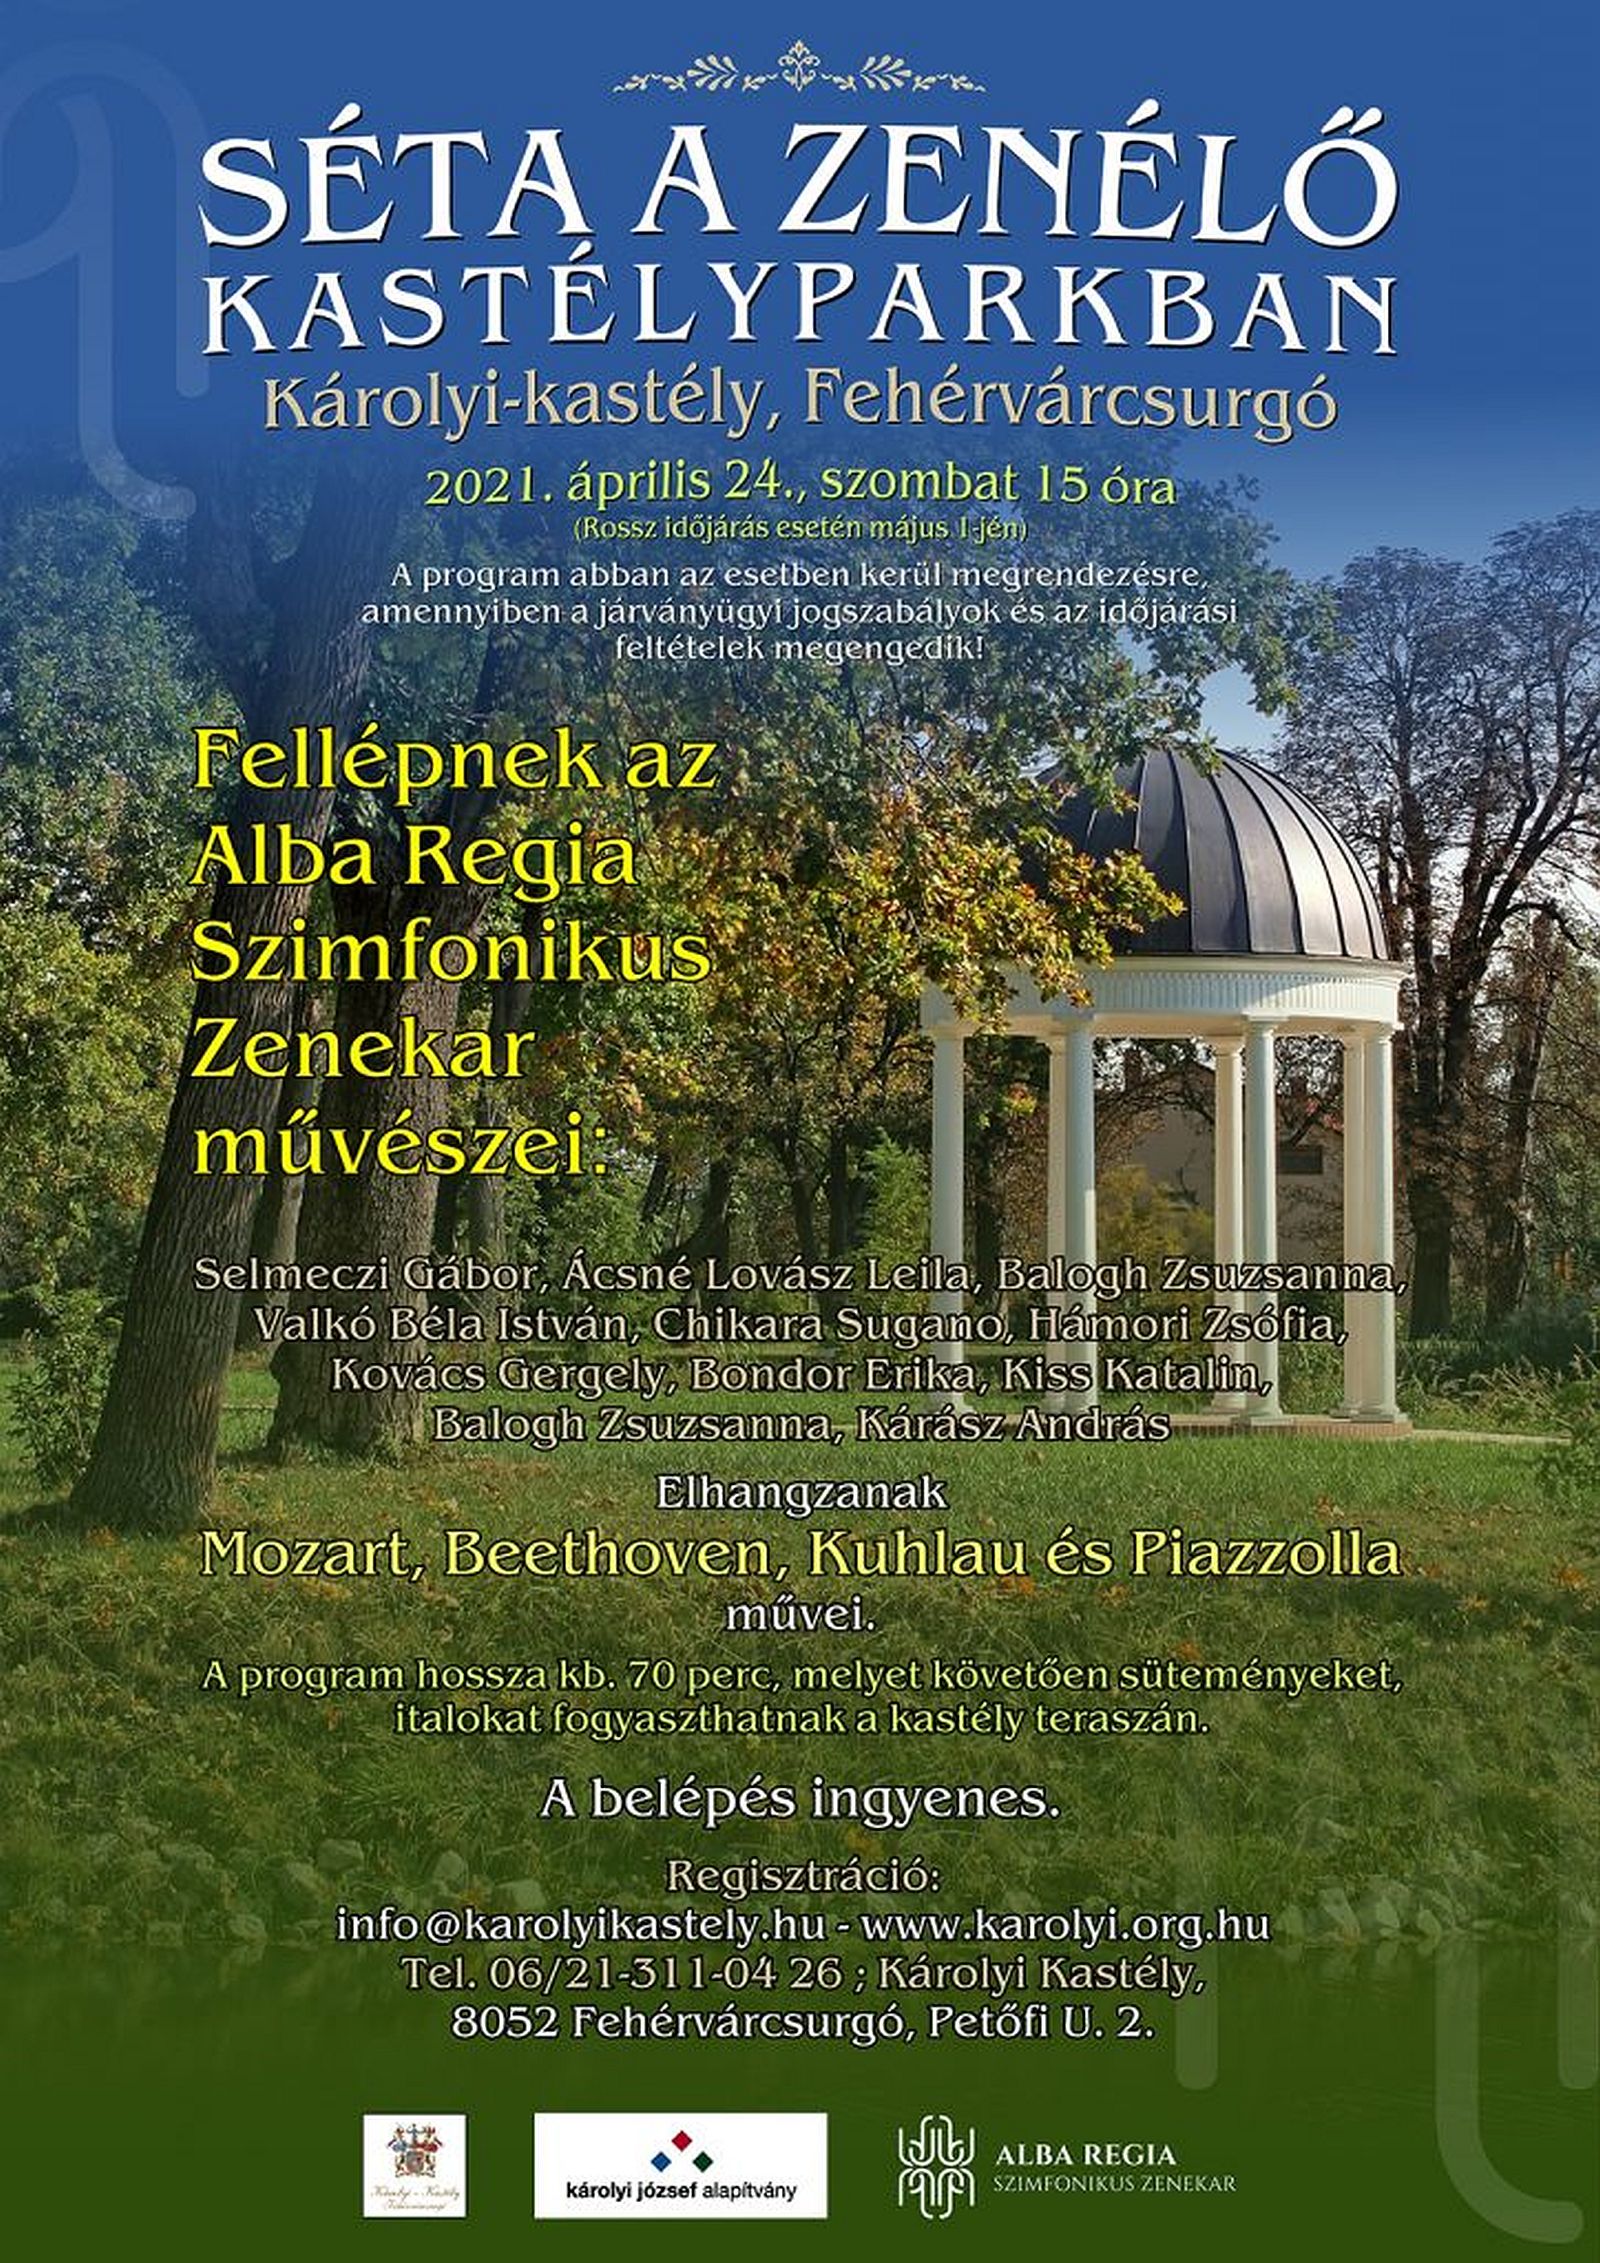 Séta a zenélő kastélyparkban szombaton, a fehérvári szimfonikusokkal